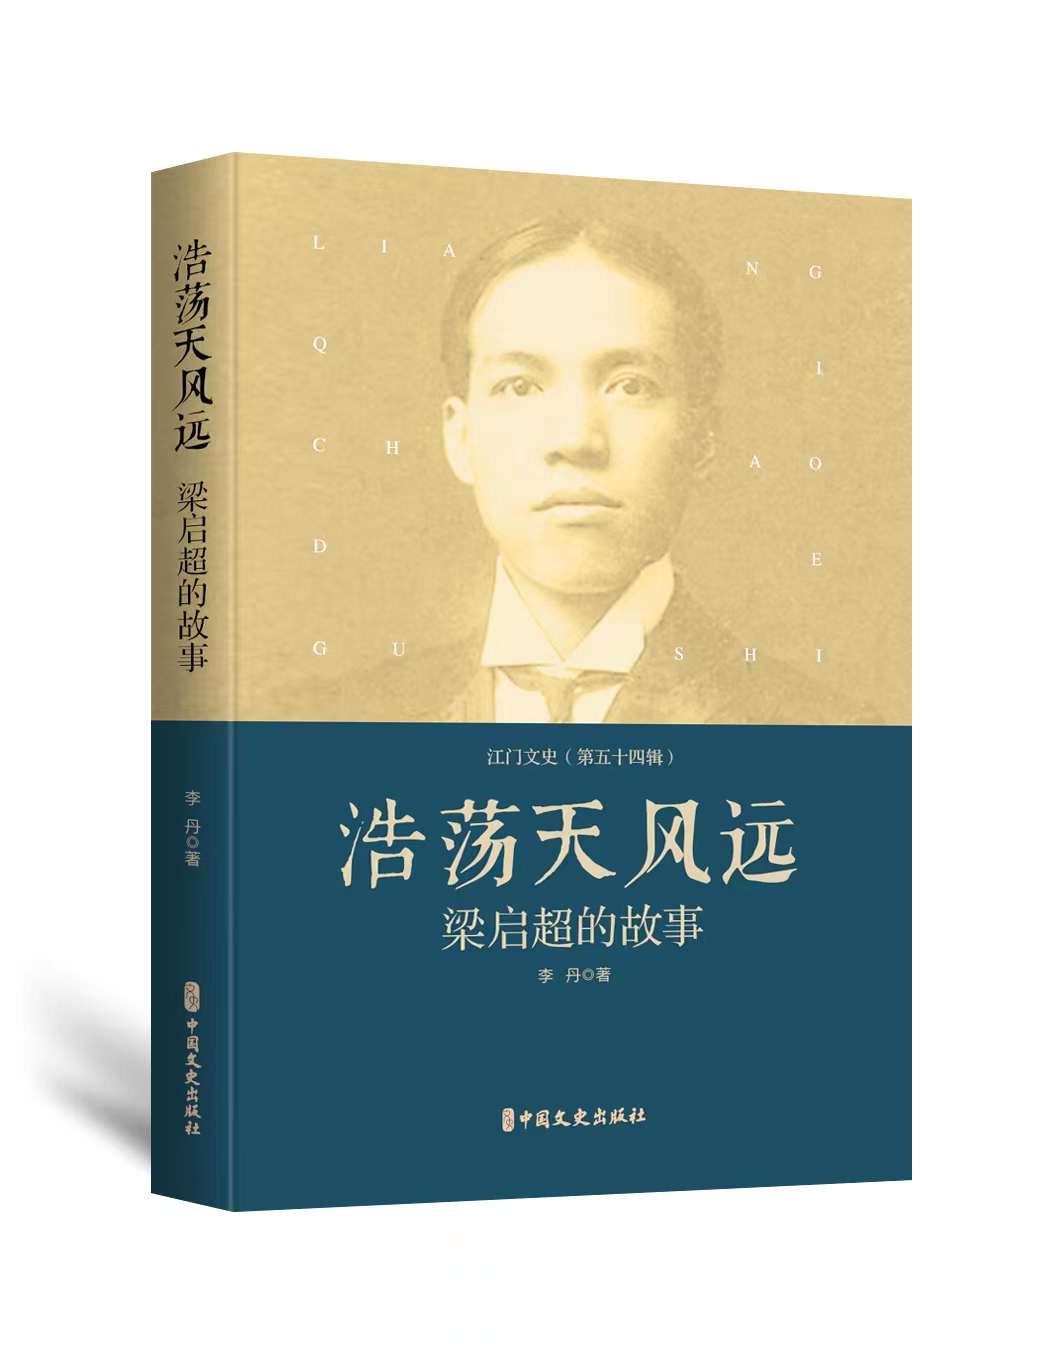 三名江门学者出版专著献礼梁启超先生诞辰150周年